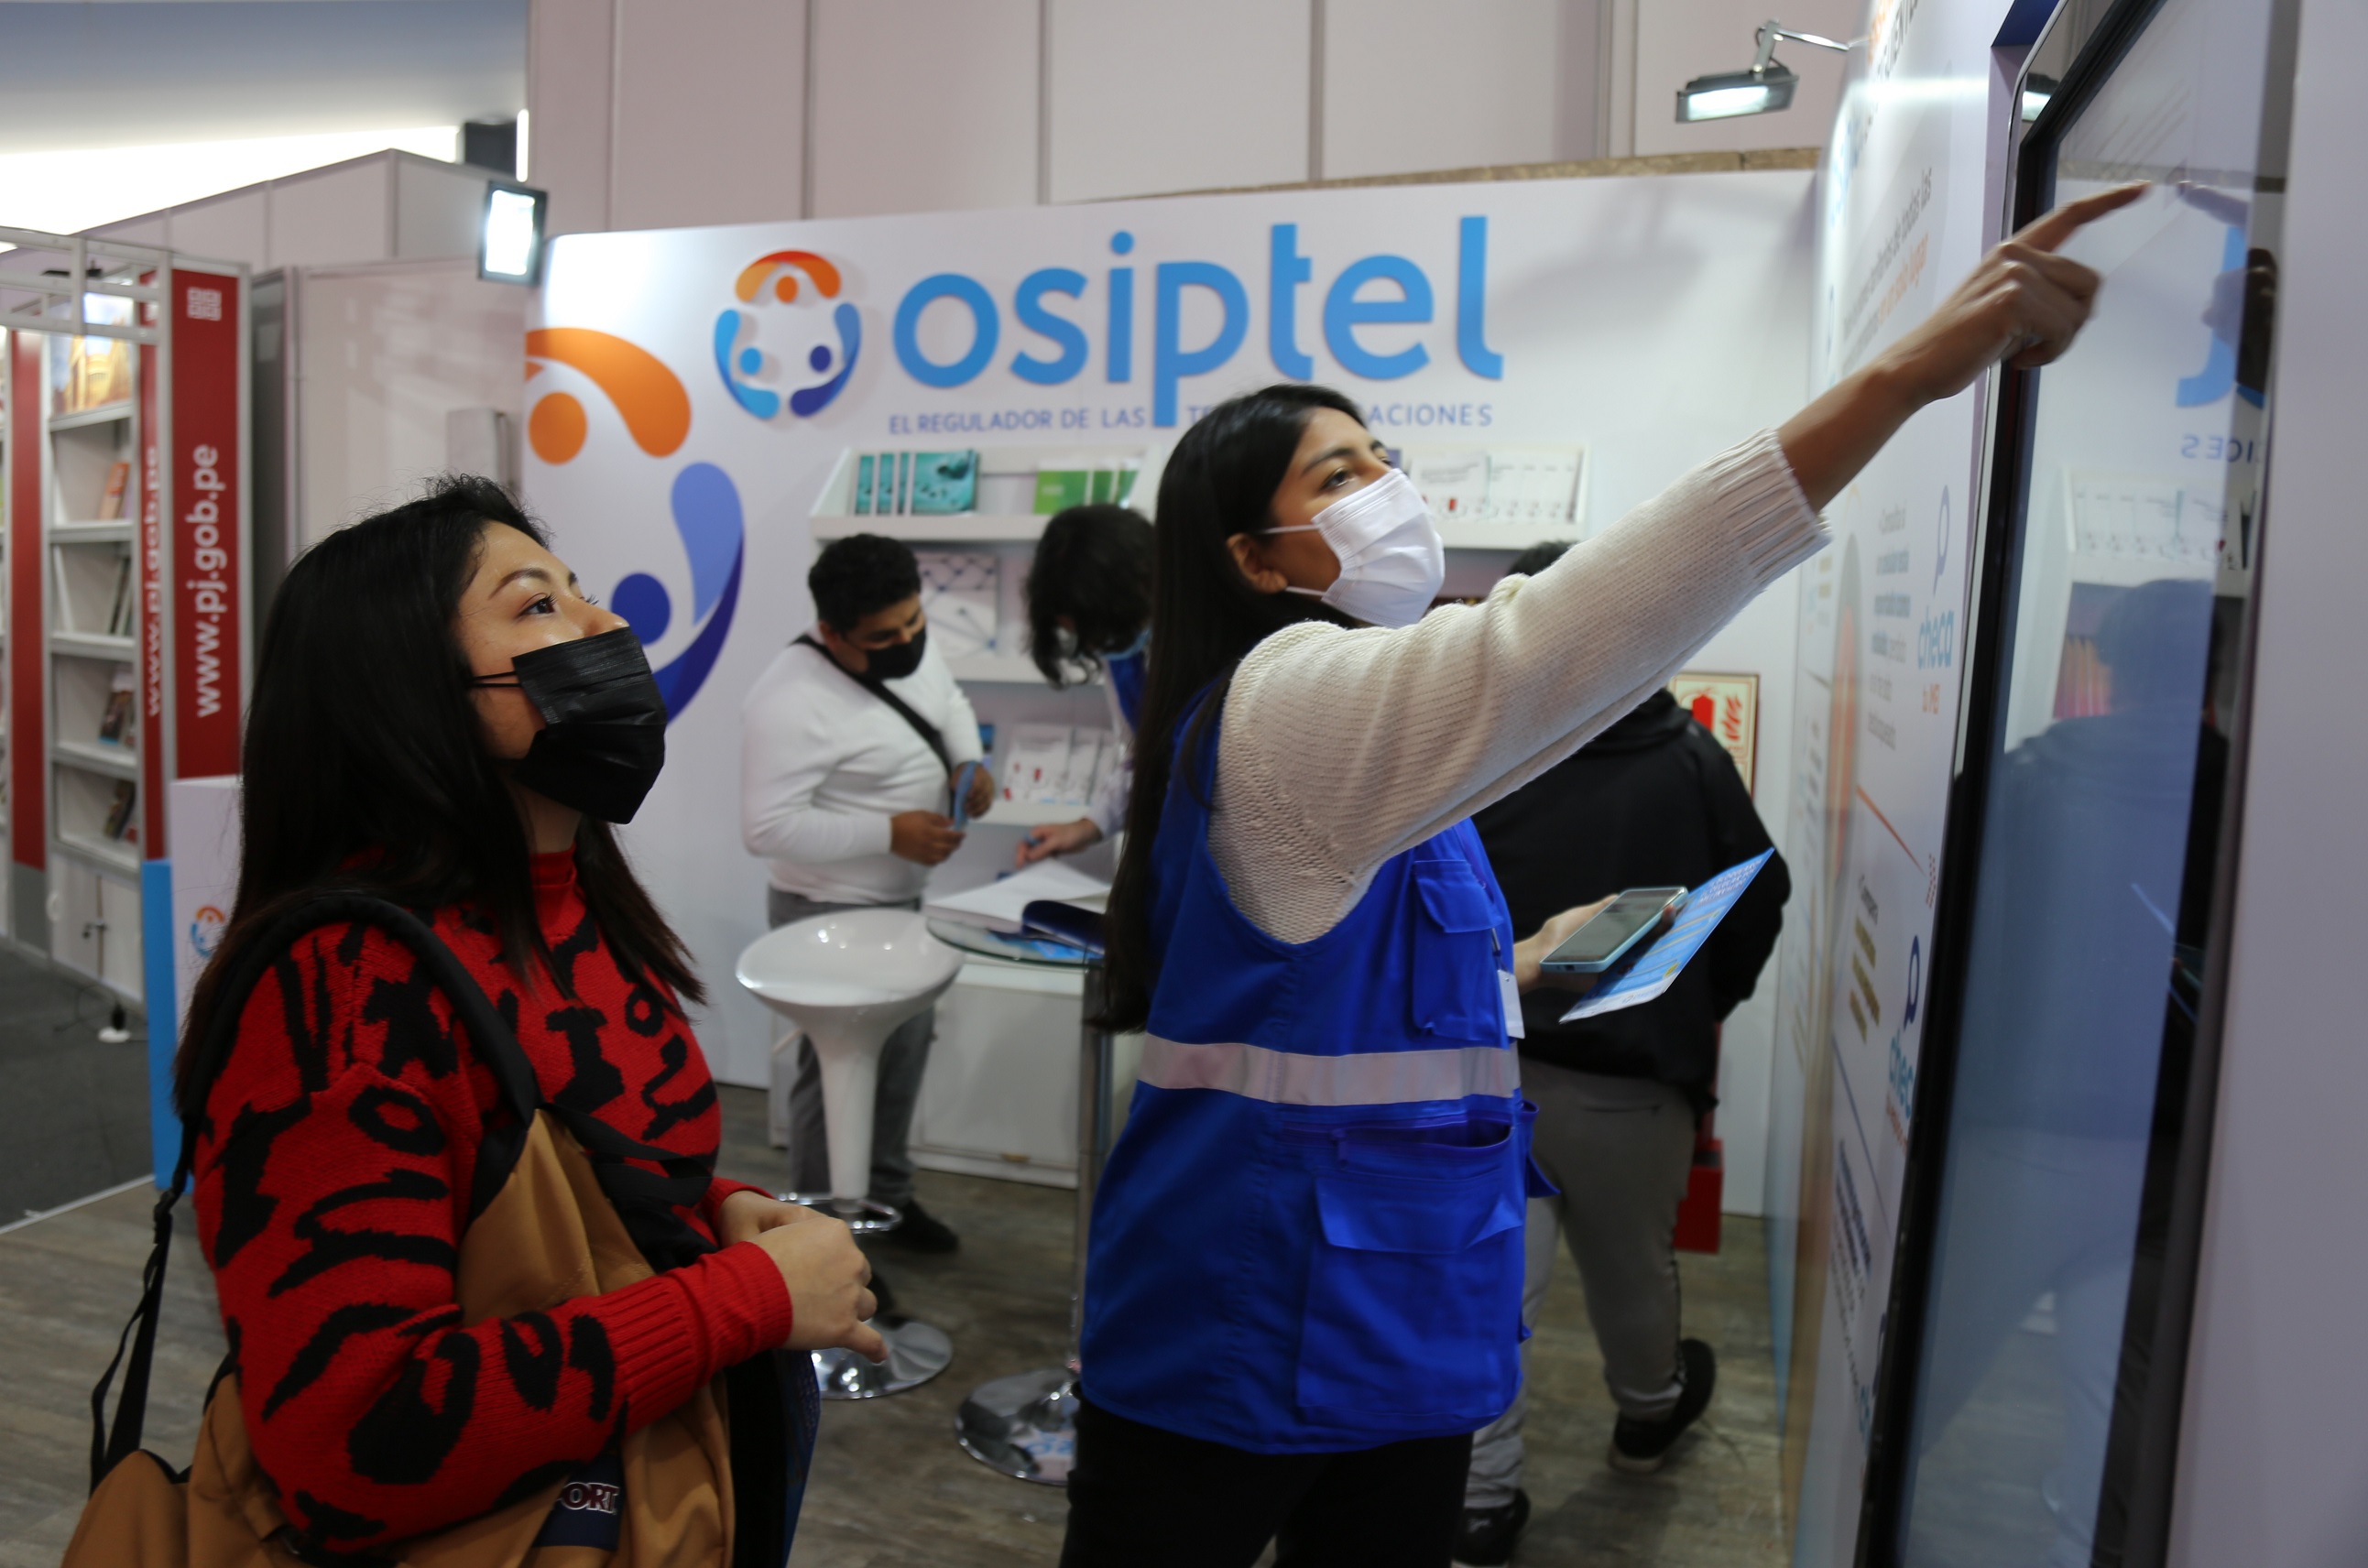 OSIPTEL presente en la Feria Internacional del Libro con herramientas digitales para empoderar a los usuarios